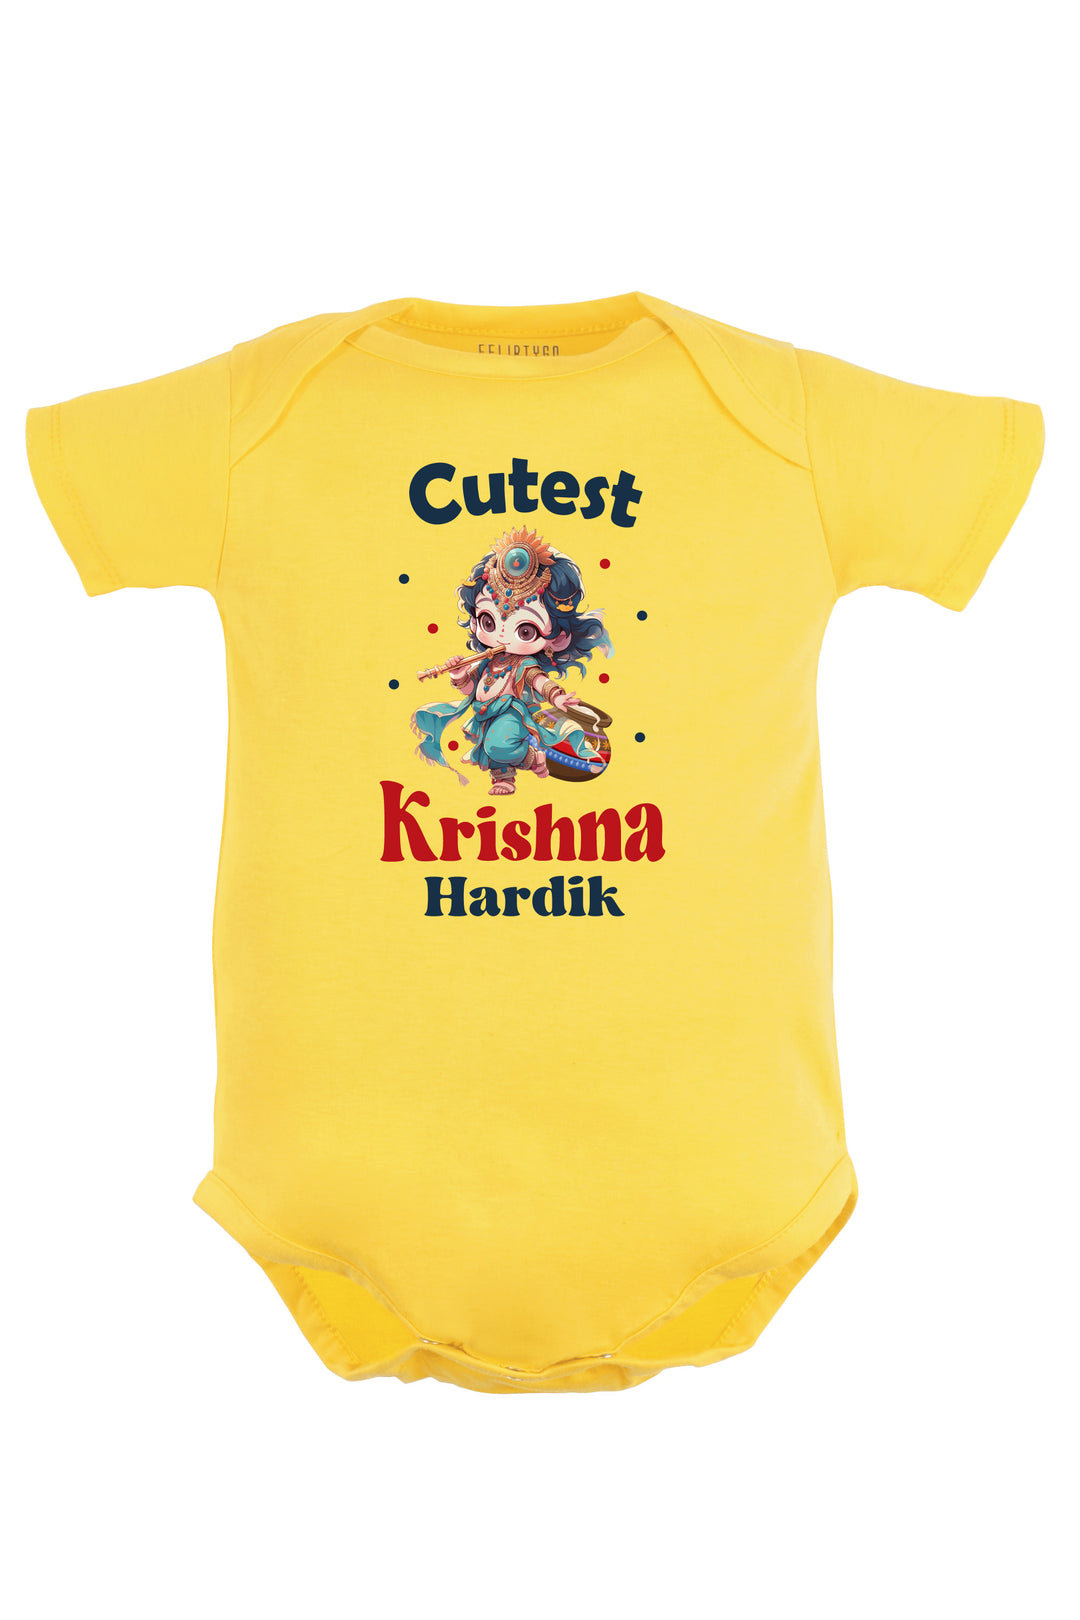 Cutest Krishna Baby Romper | Onesies w/ Custom Name